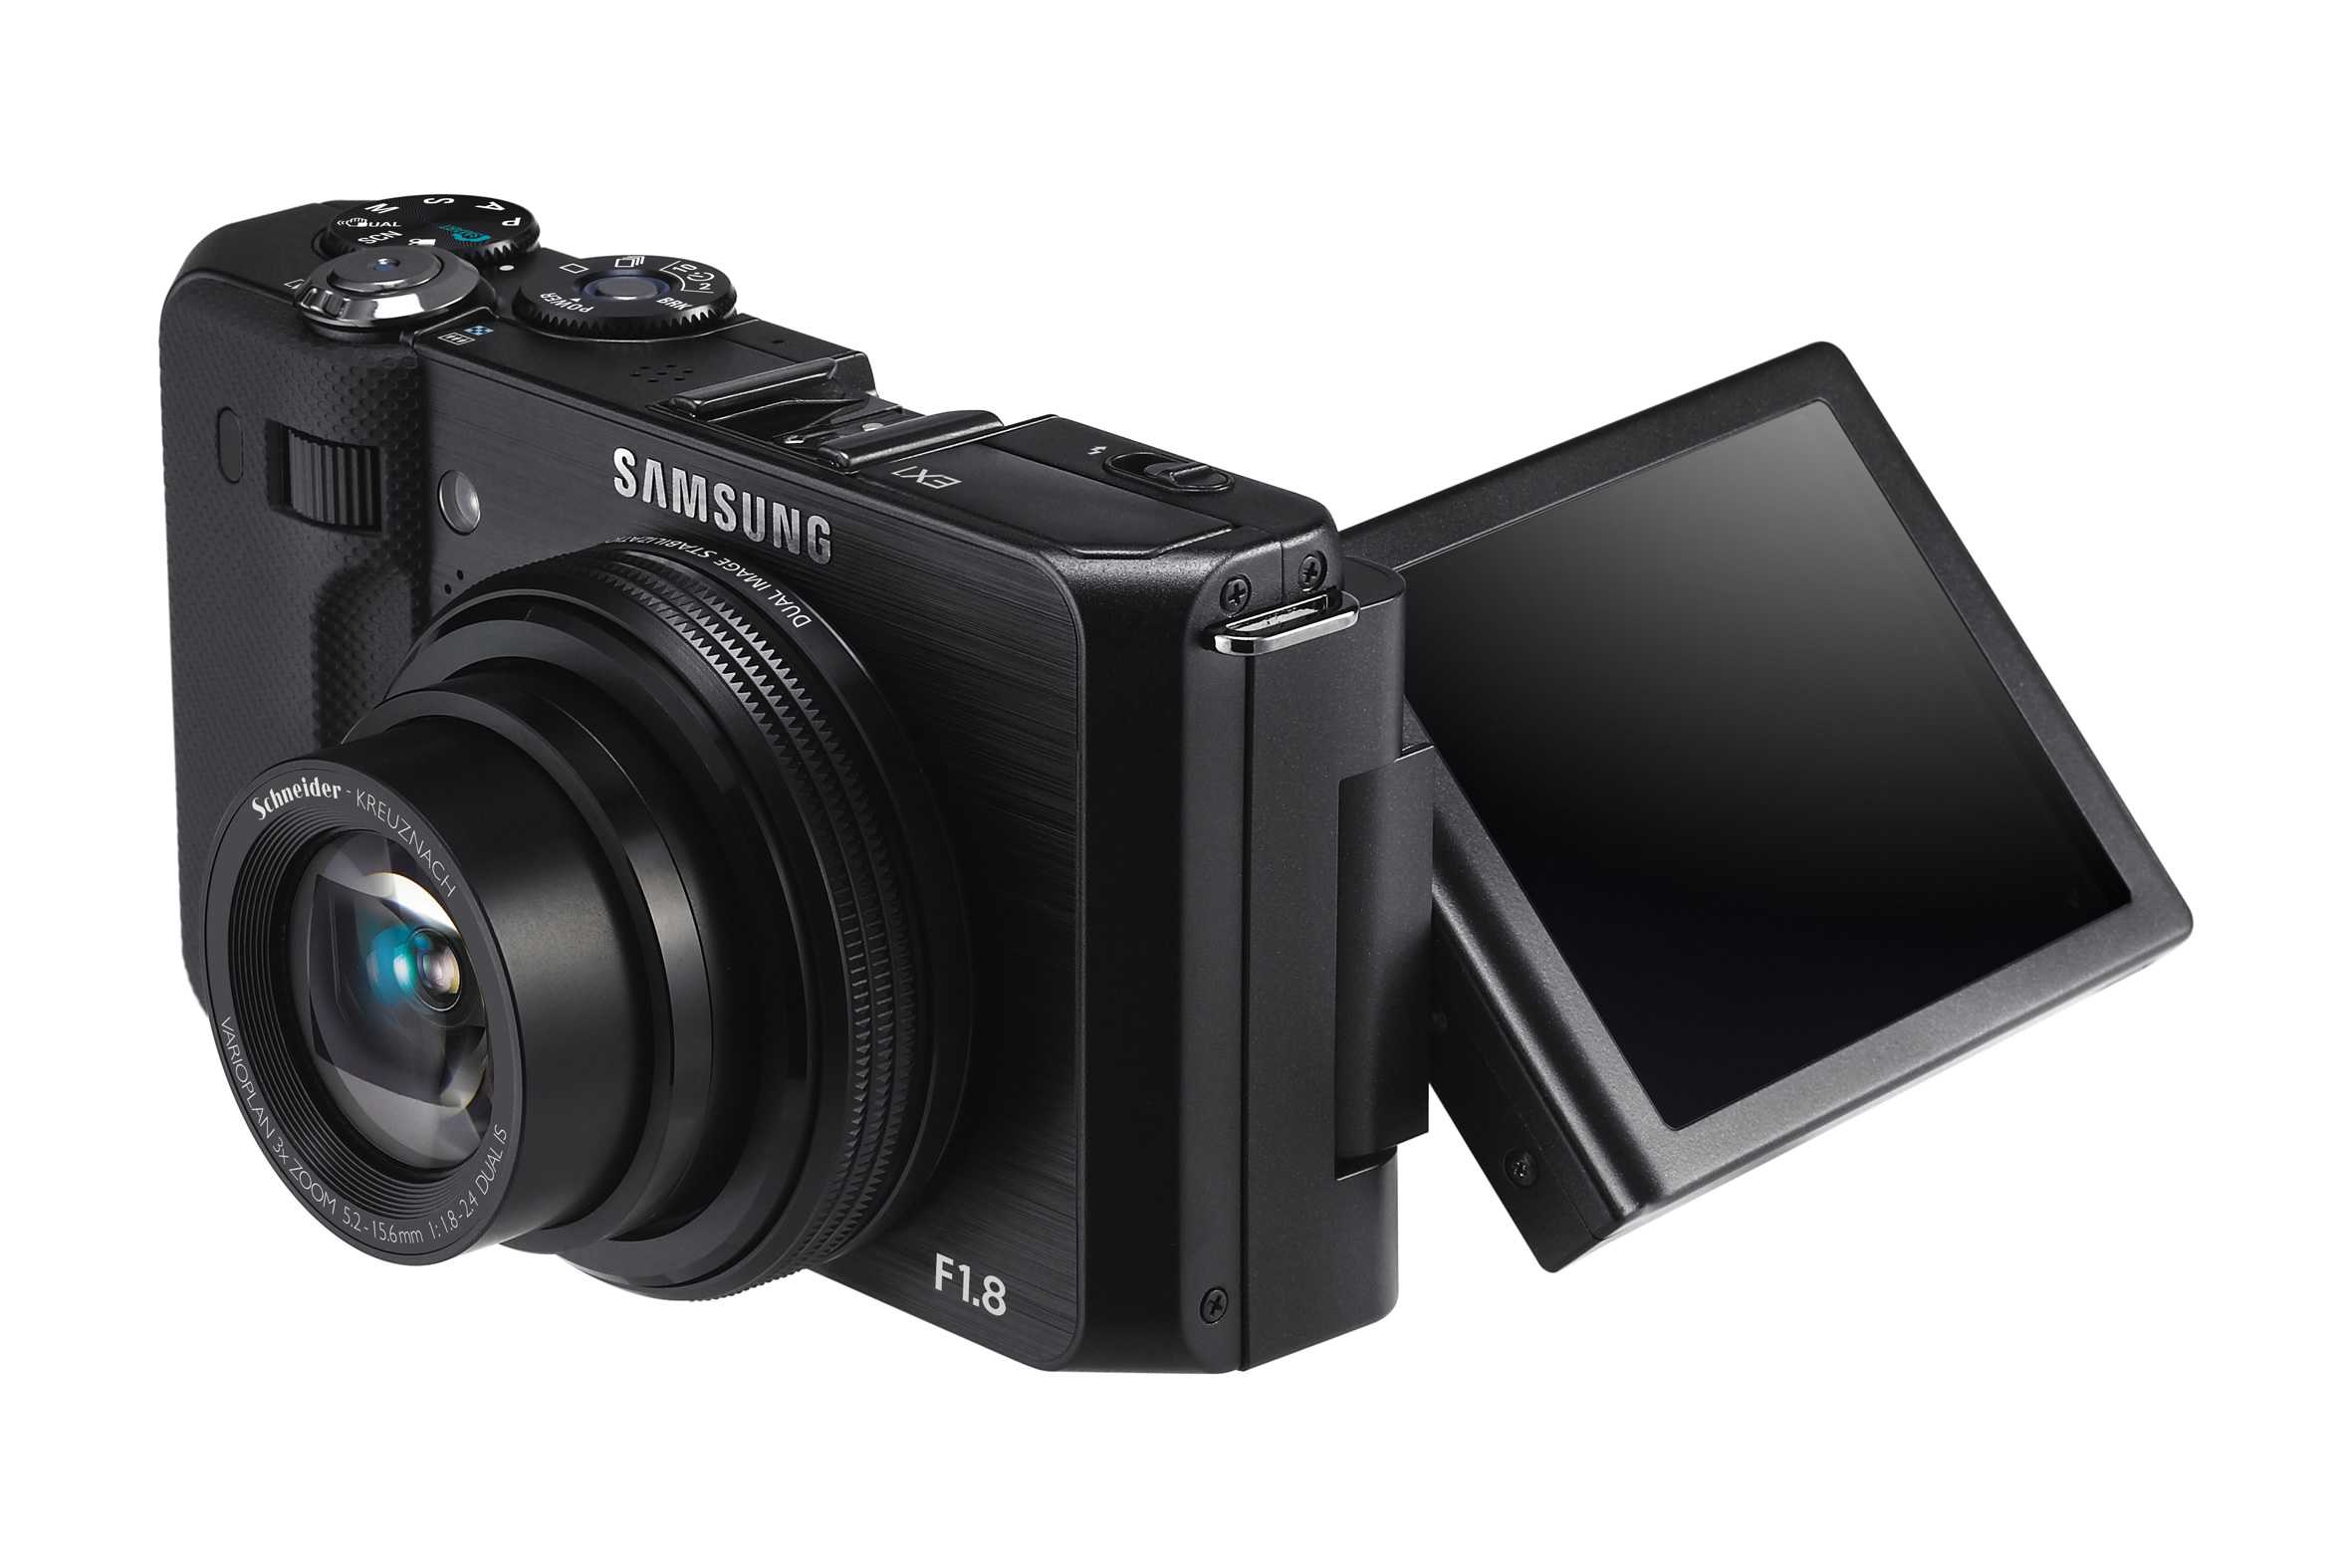 Samsung ex2f (белый) - купить , скидки, цена, отзывы, обзор, характеристики - фотоаппараты цифровые